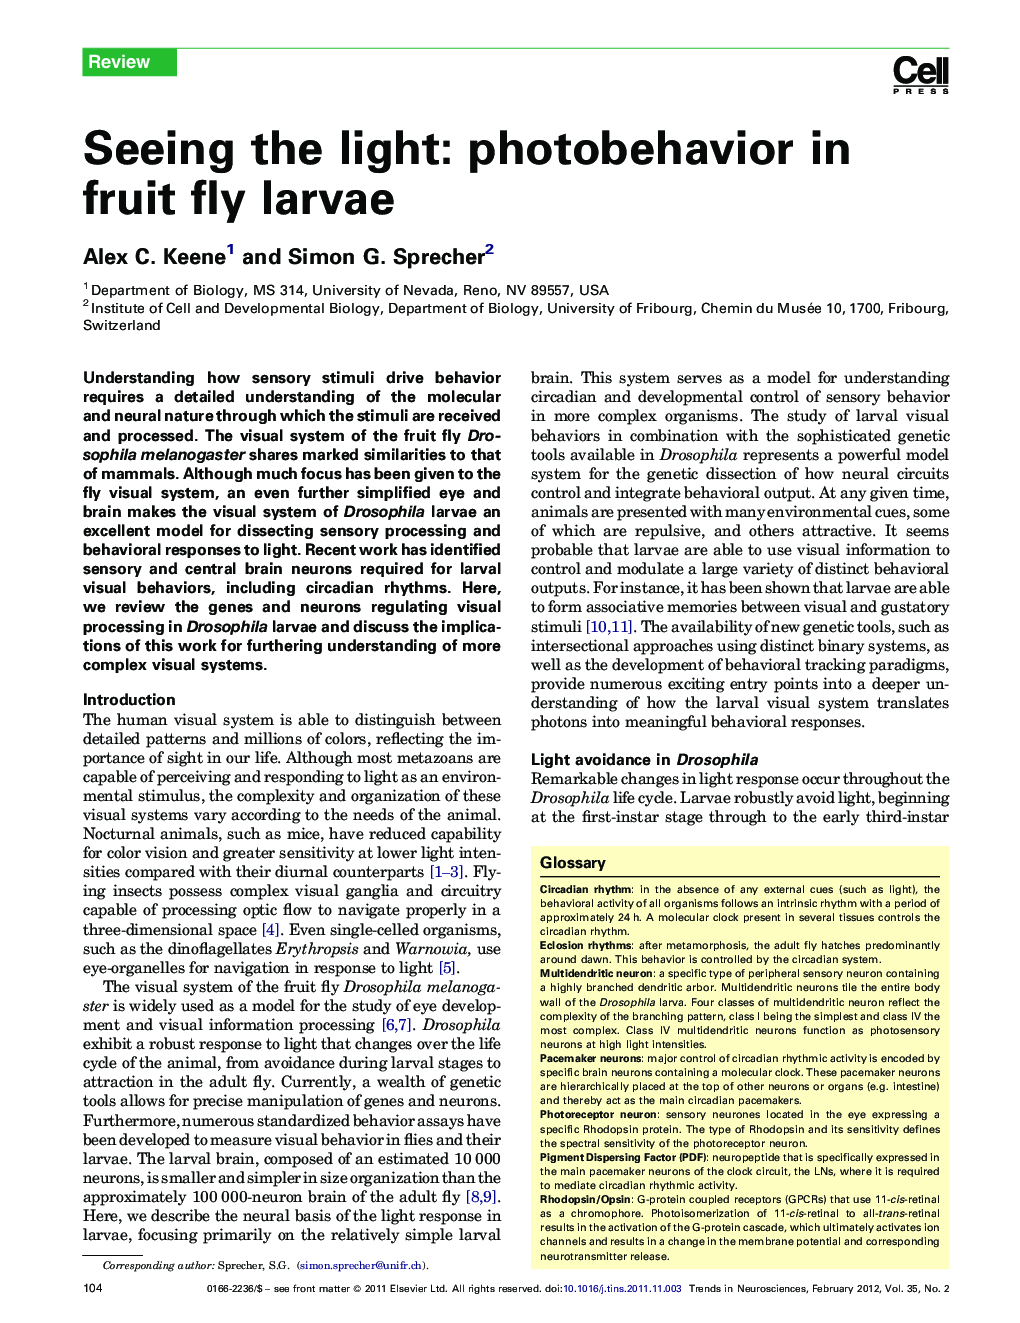 Seeing the light: photobehavior in fruit fly larvae